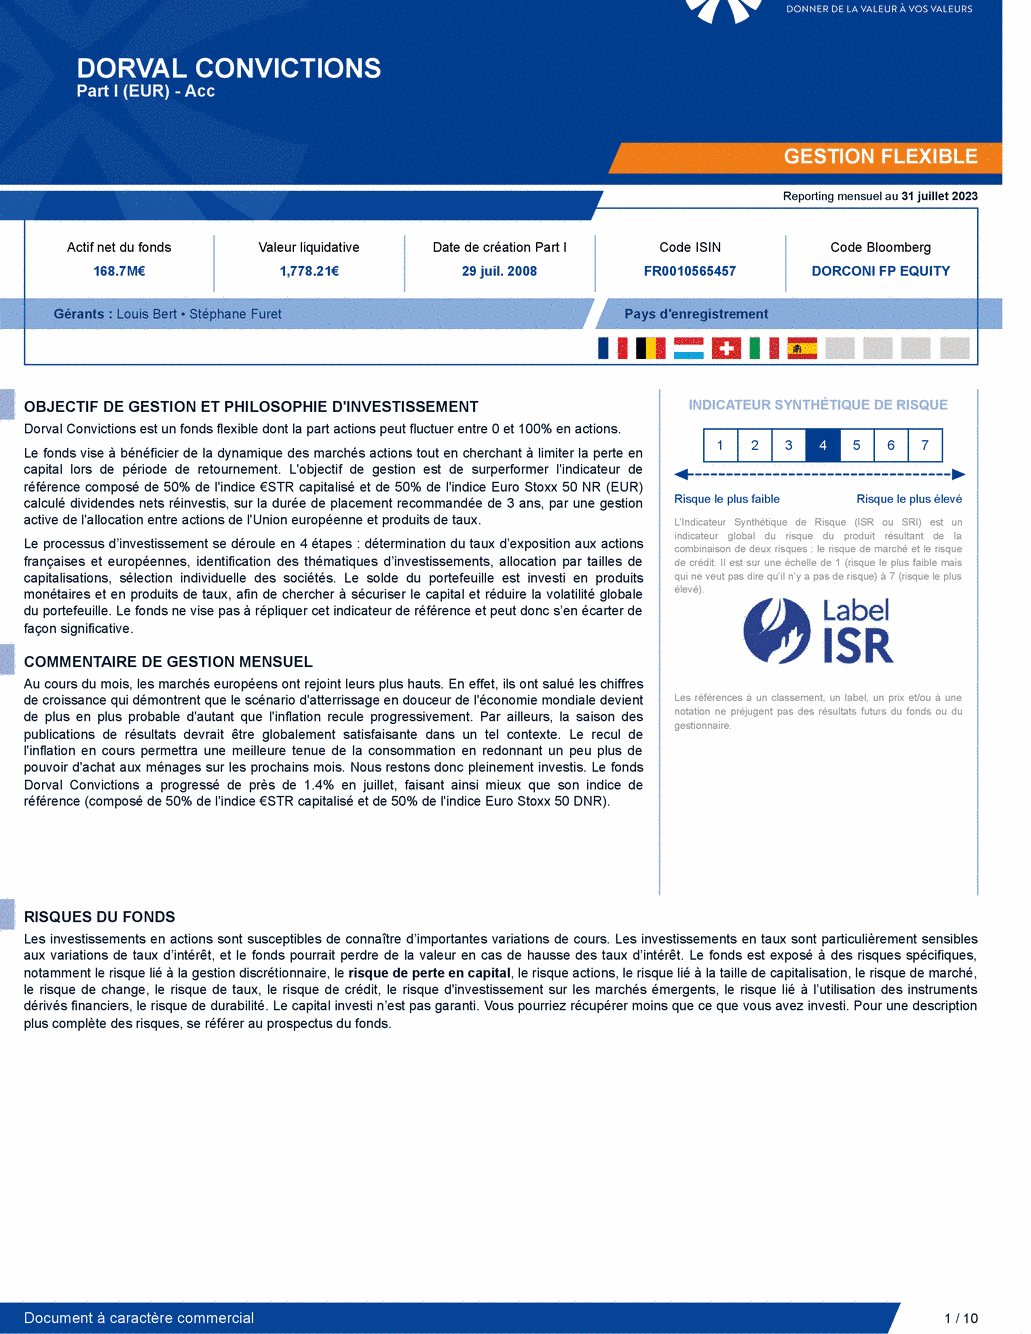 Reporting DORVAL CONVICTIONS I - 31/07/2023 - Français